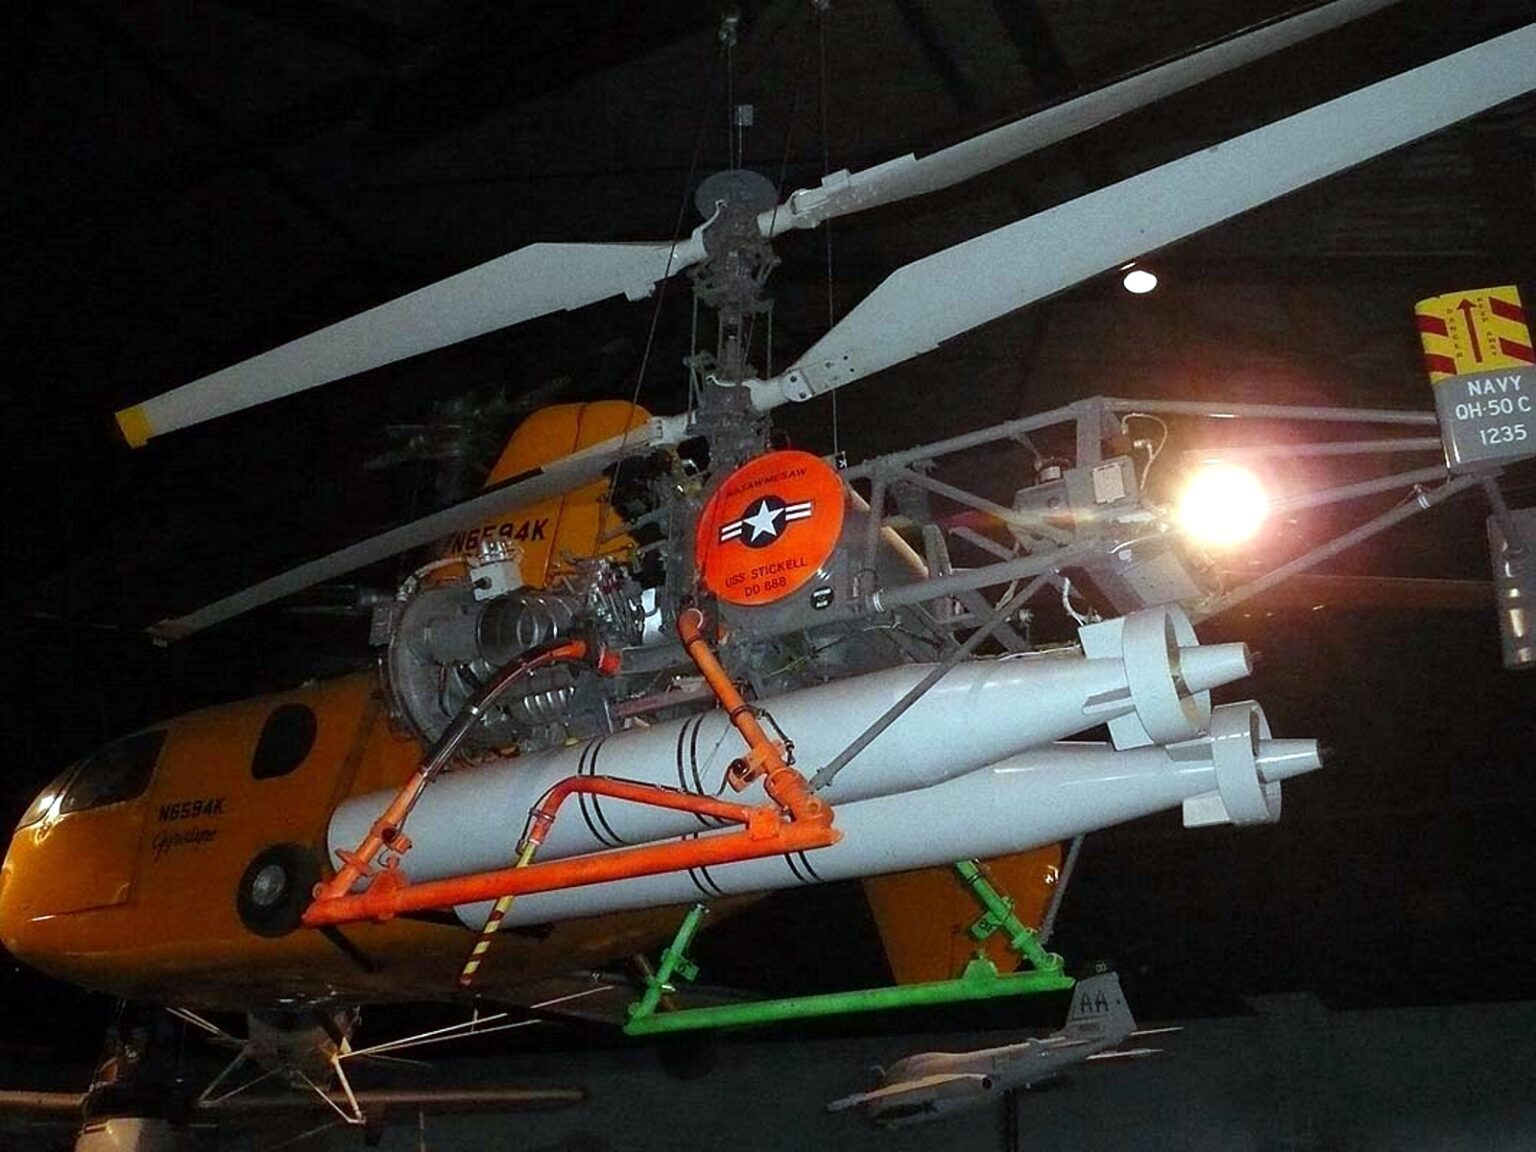 1704920087 144 عجیب ترین هلیکوپترهای نظامی که تاکنون ساخته شده اند؛ از